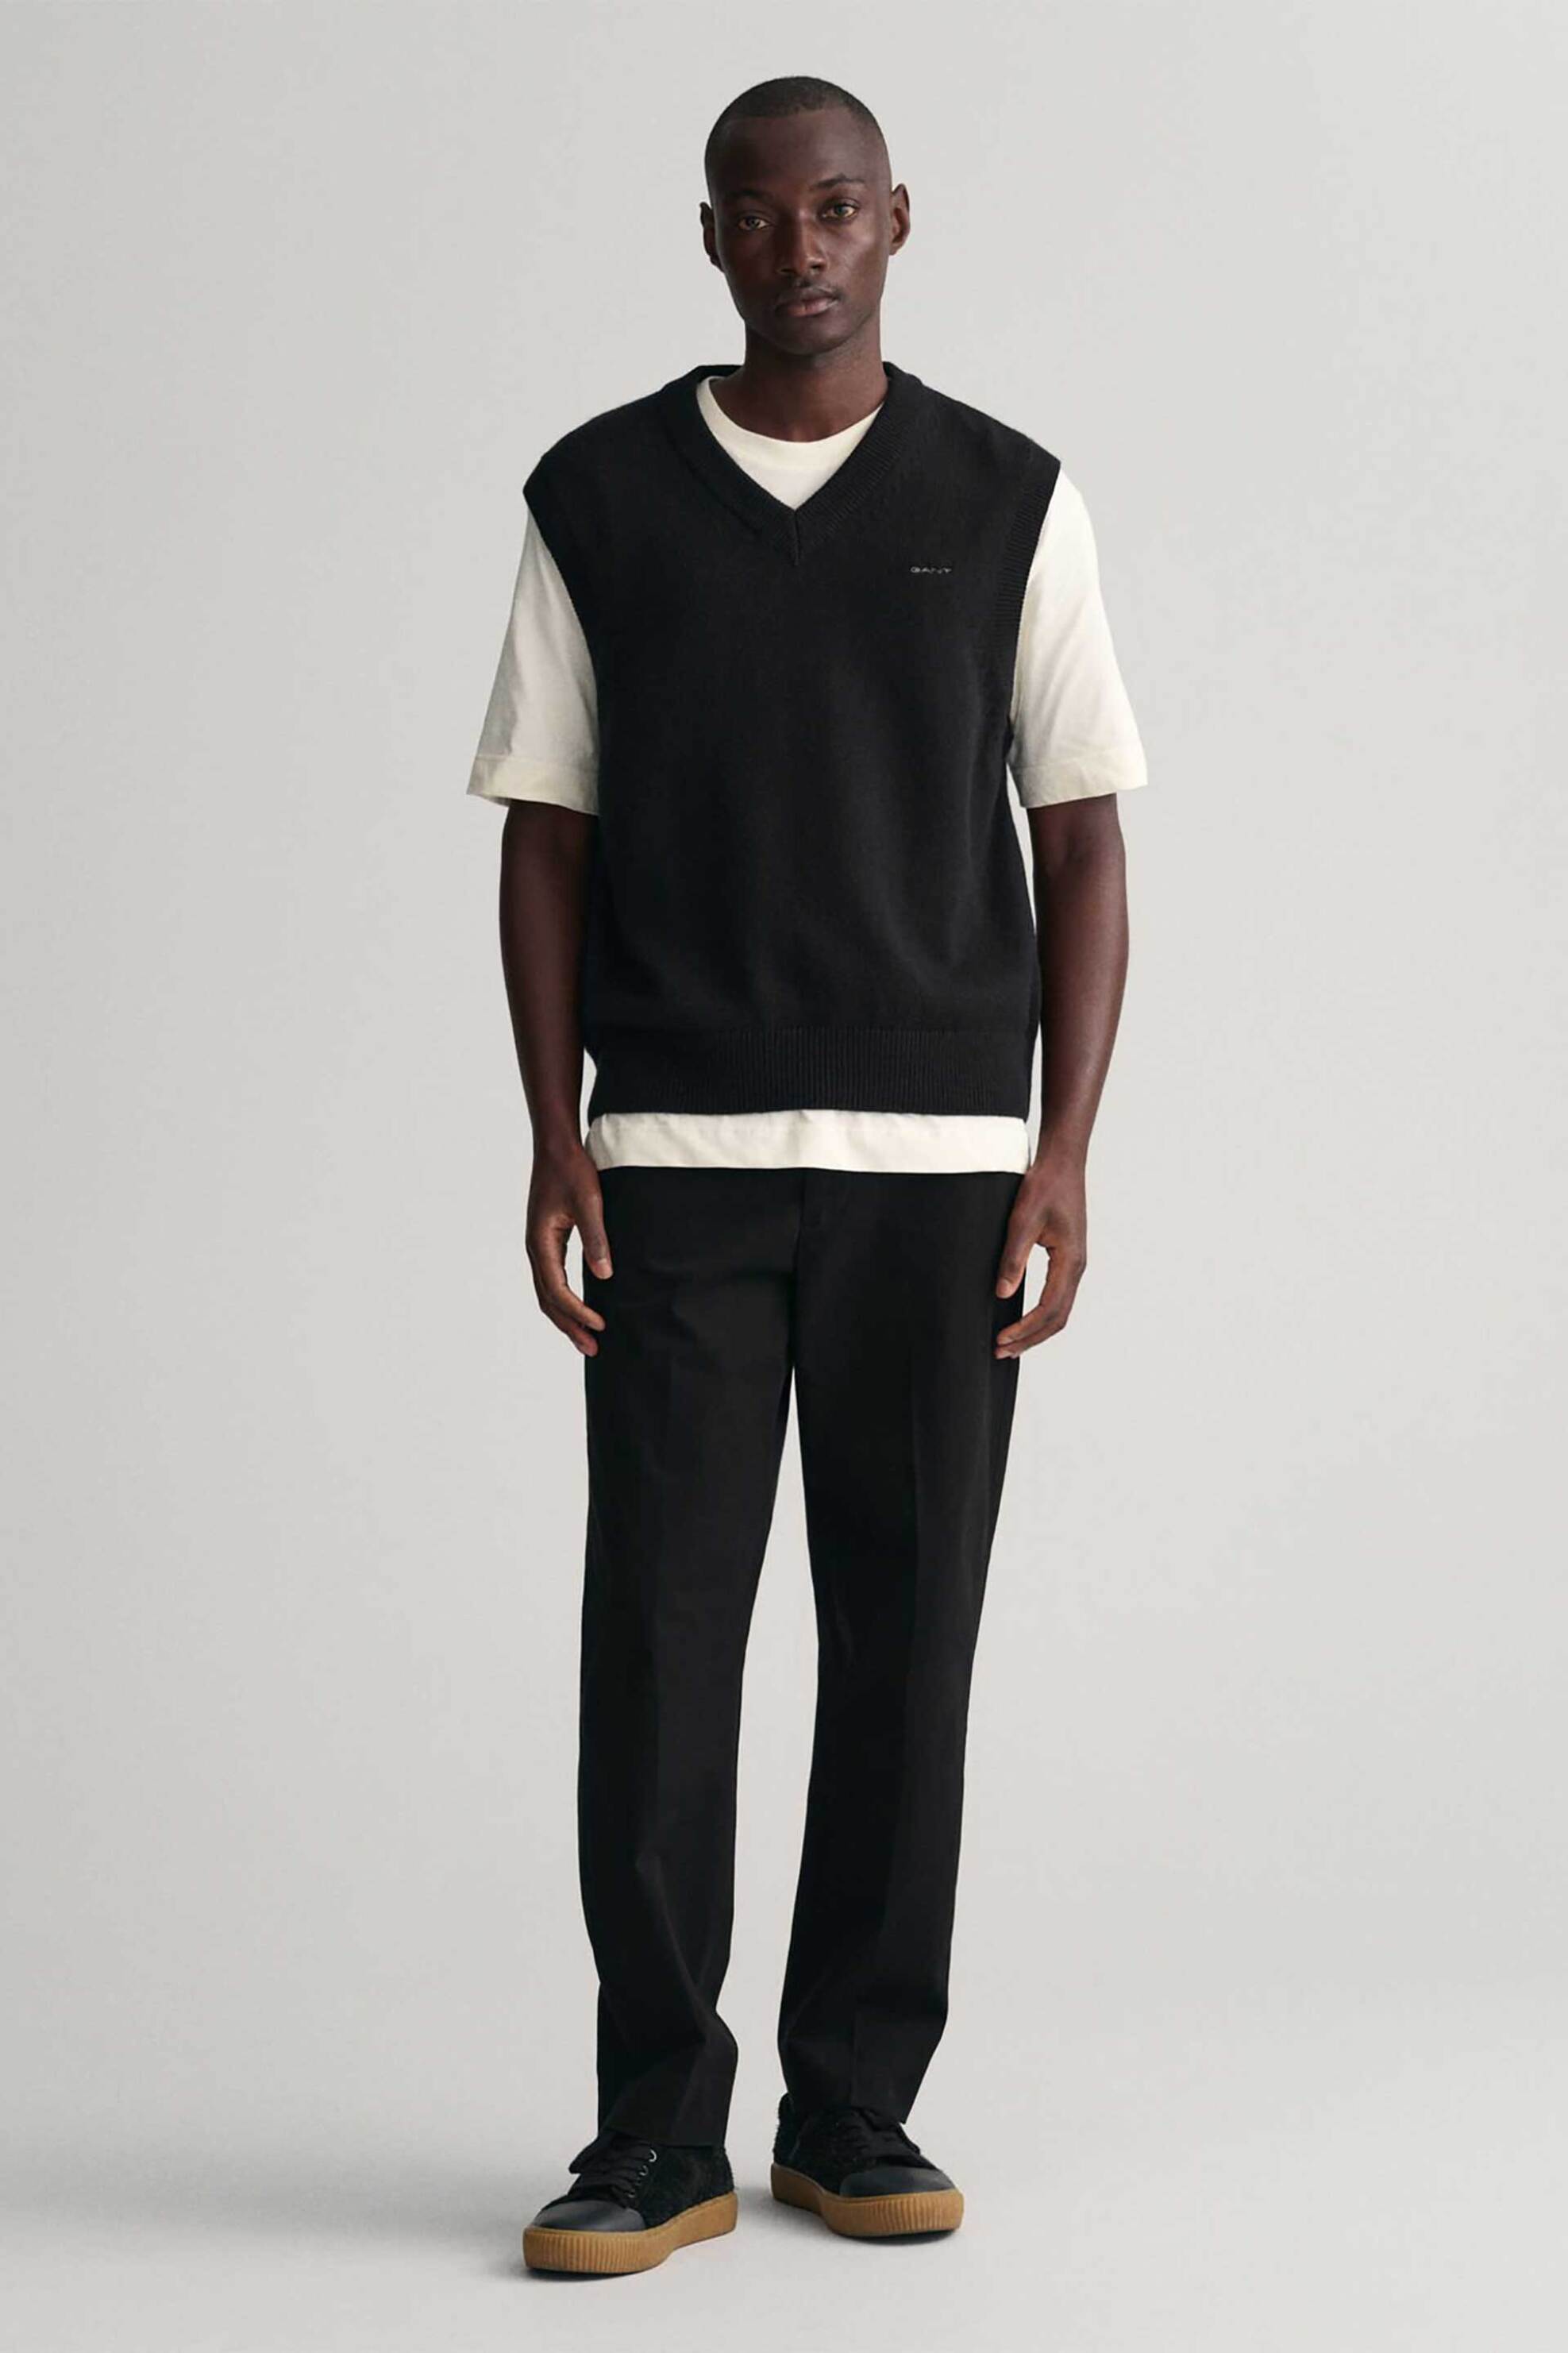 Άνδρας > ΡΟΥΧΑ > Παντελόνια > Casual & Πεντάτσεπα Gant ανδρικό παντελόνι μονόχρωμο με τσάκιση Slim Fit - 1505225 Μαύρο